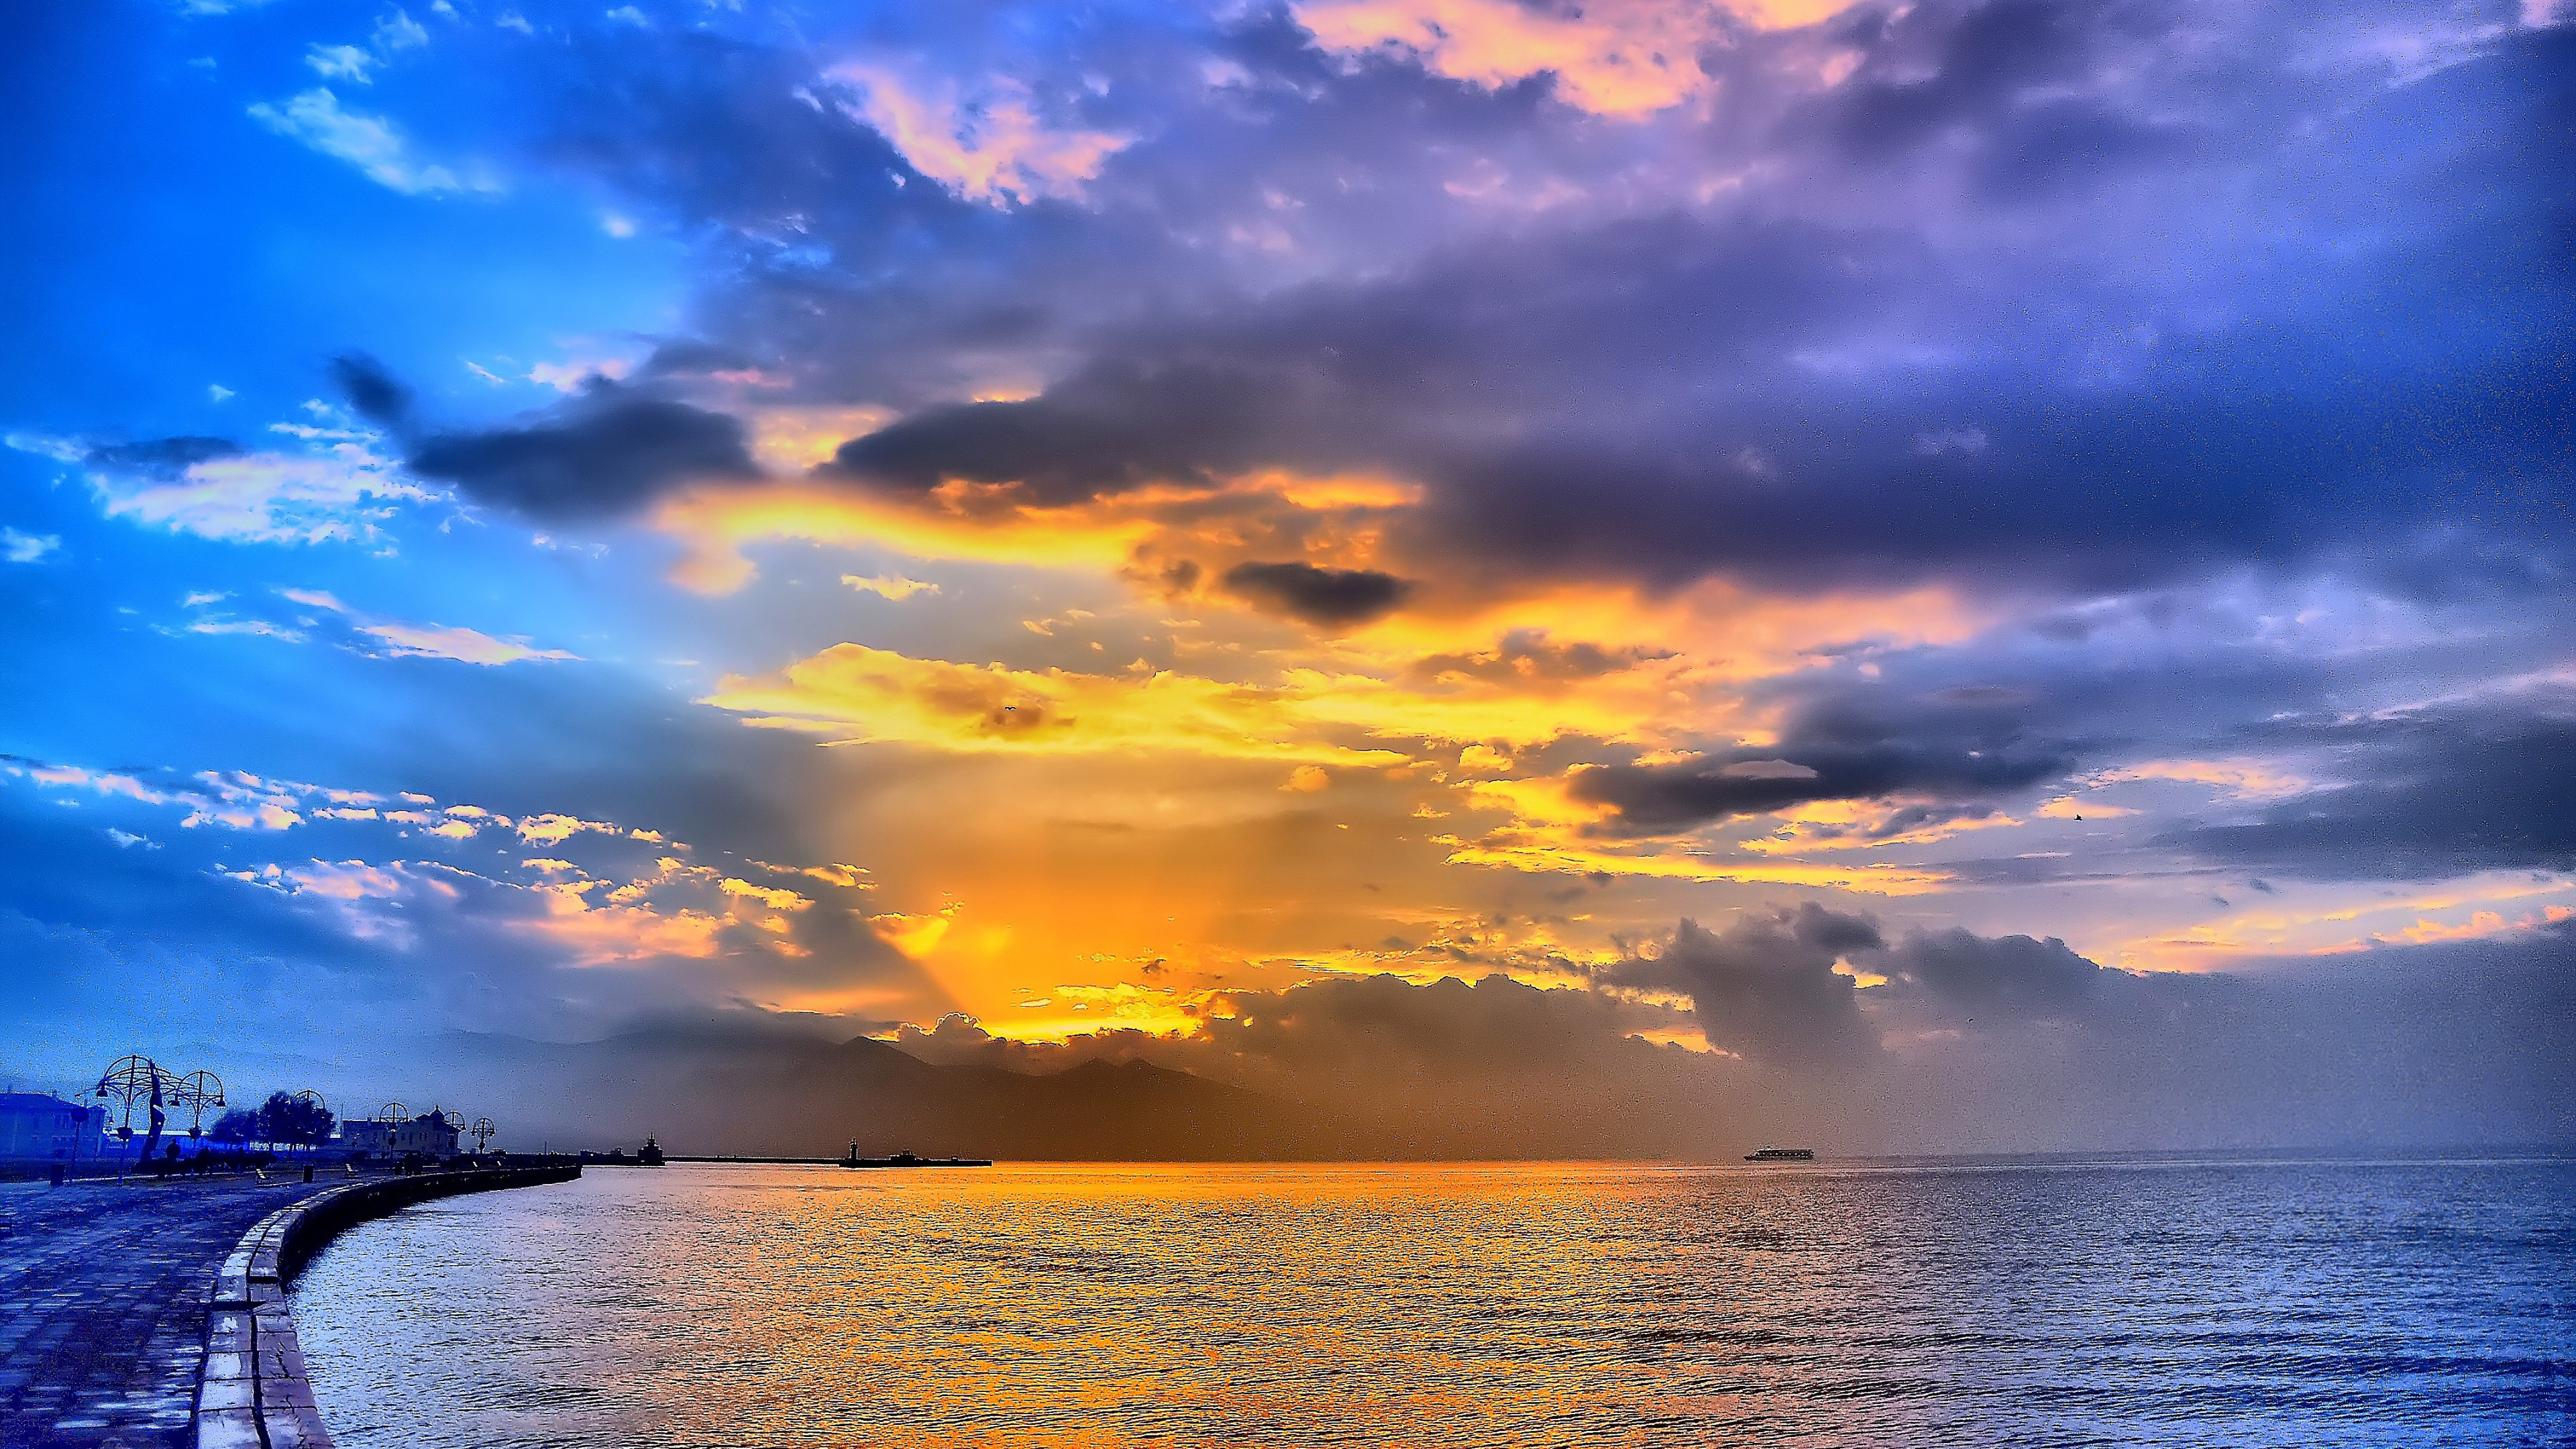 Ocean Sunset Wallpapers  Top 25 Best Ocean Sunset Wallpapers Download